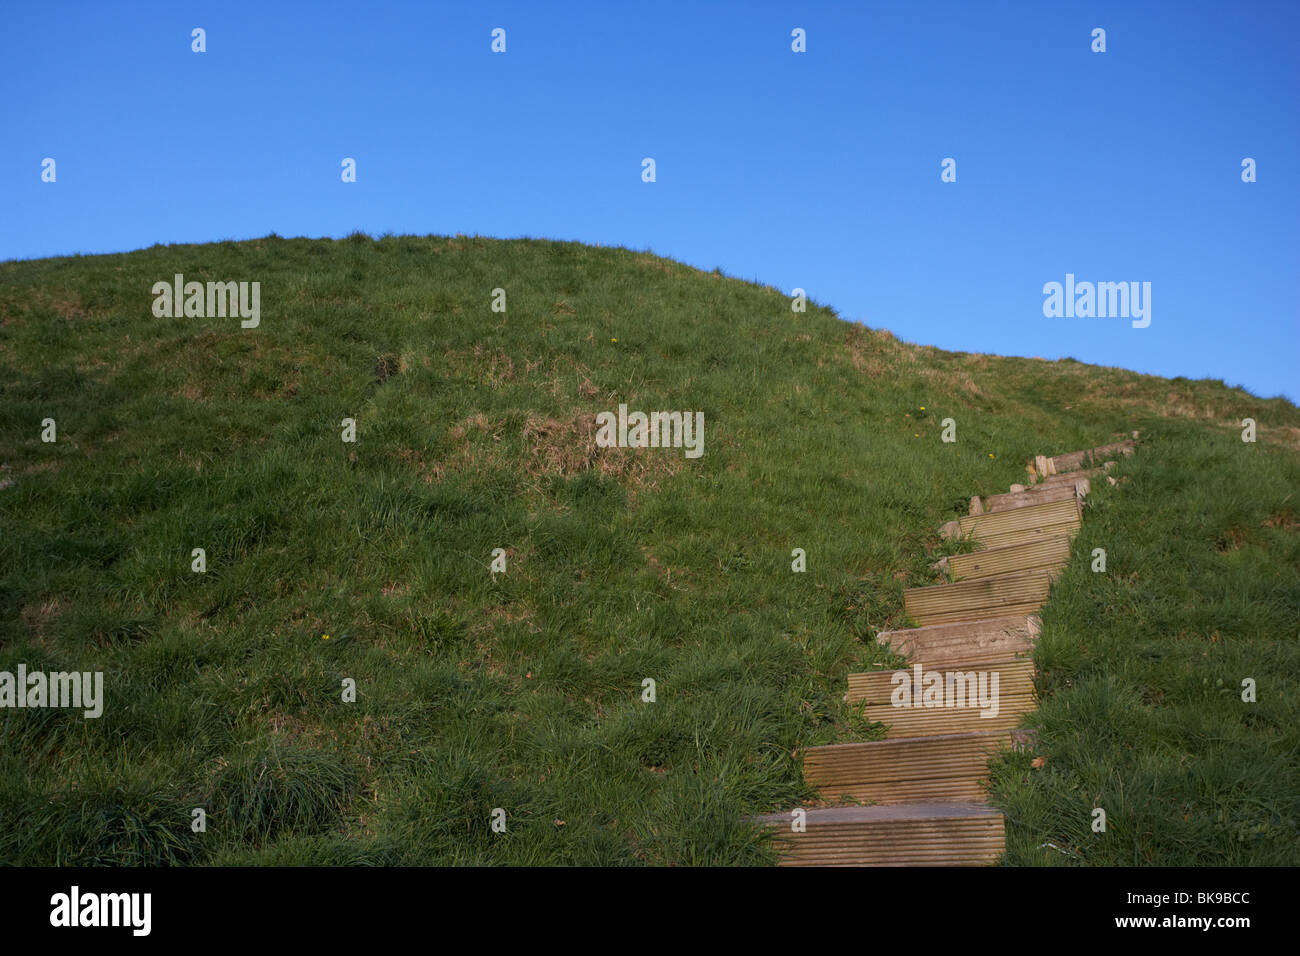 Schritte bis zum gemacht oben Dundonald Graben oder Motte Mann künstlichen Hügel für eine Festung Grafschaft unten Nordirland Vereinigtes Königreich Stockfoto